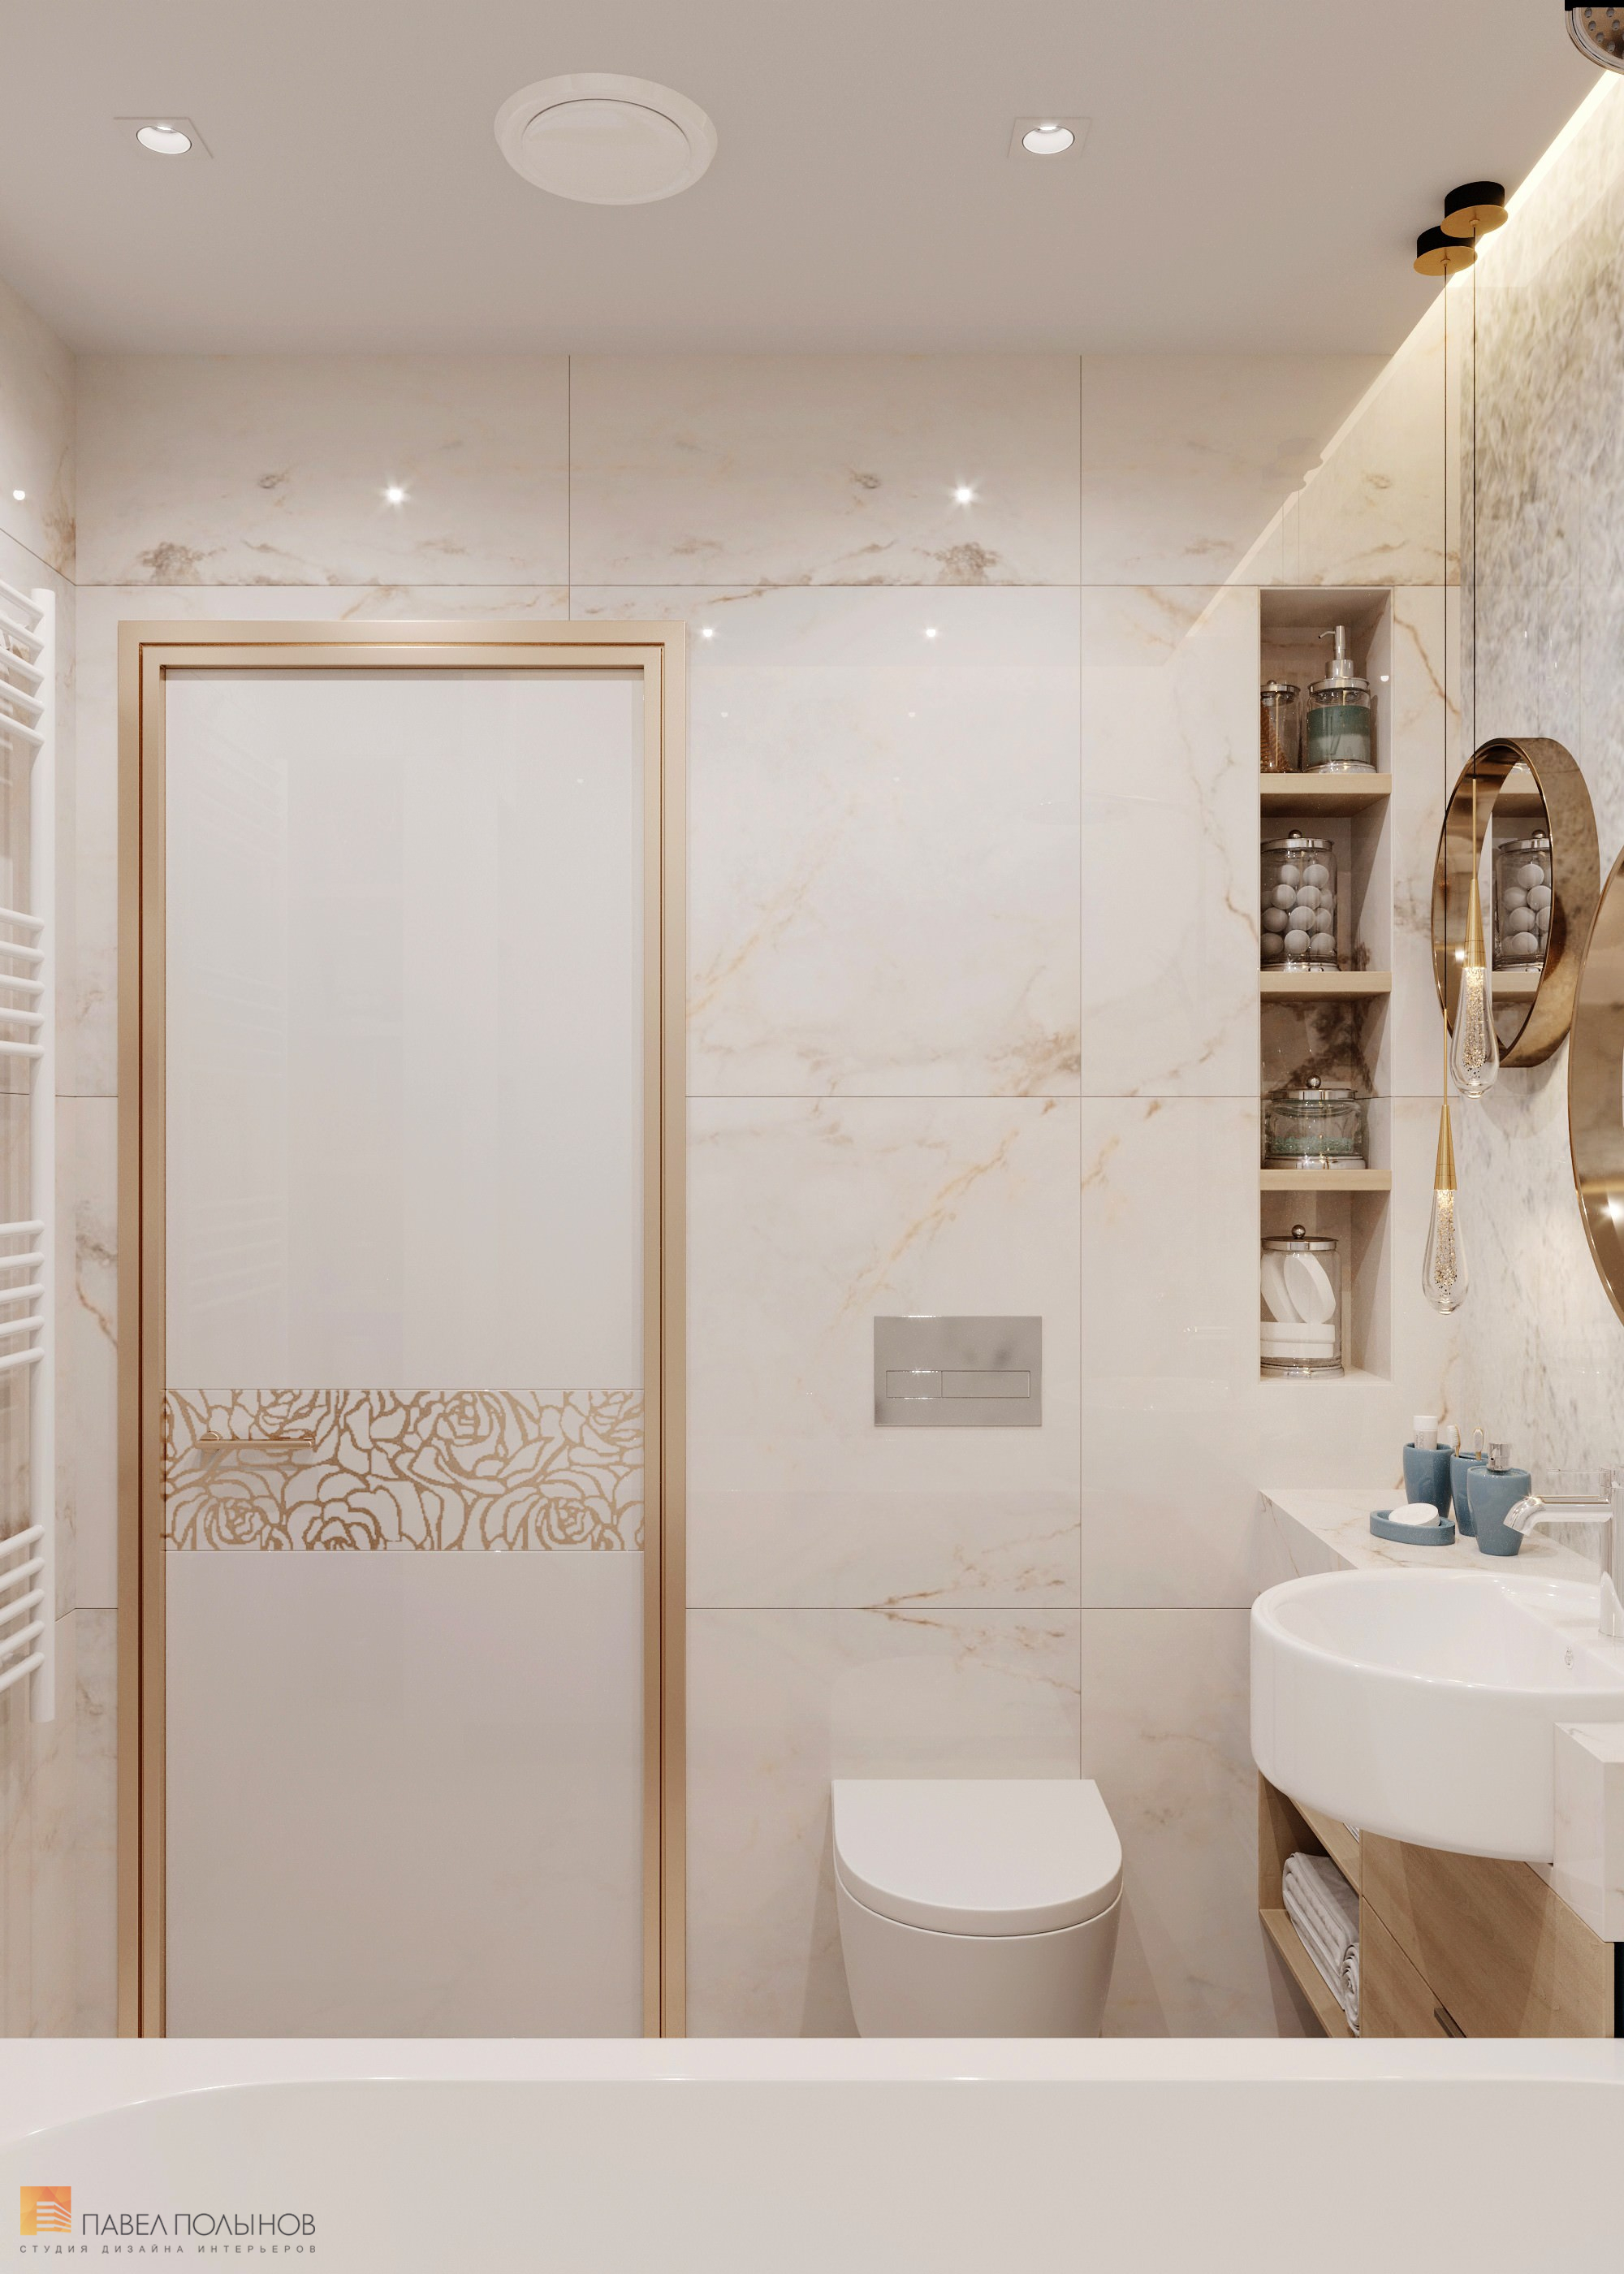 Фото дизайн интерьера ванной комнаты из проекта «Квартира в современном стиле, ЖК «Аннино парк», 54 кв.м.»